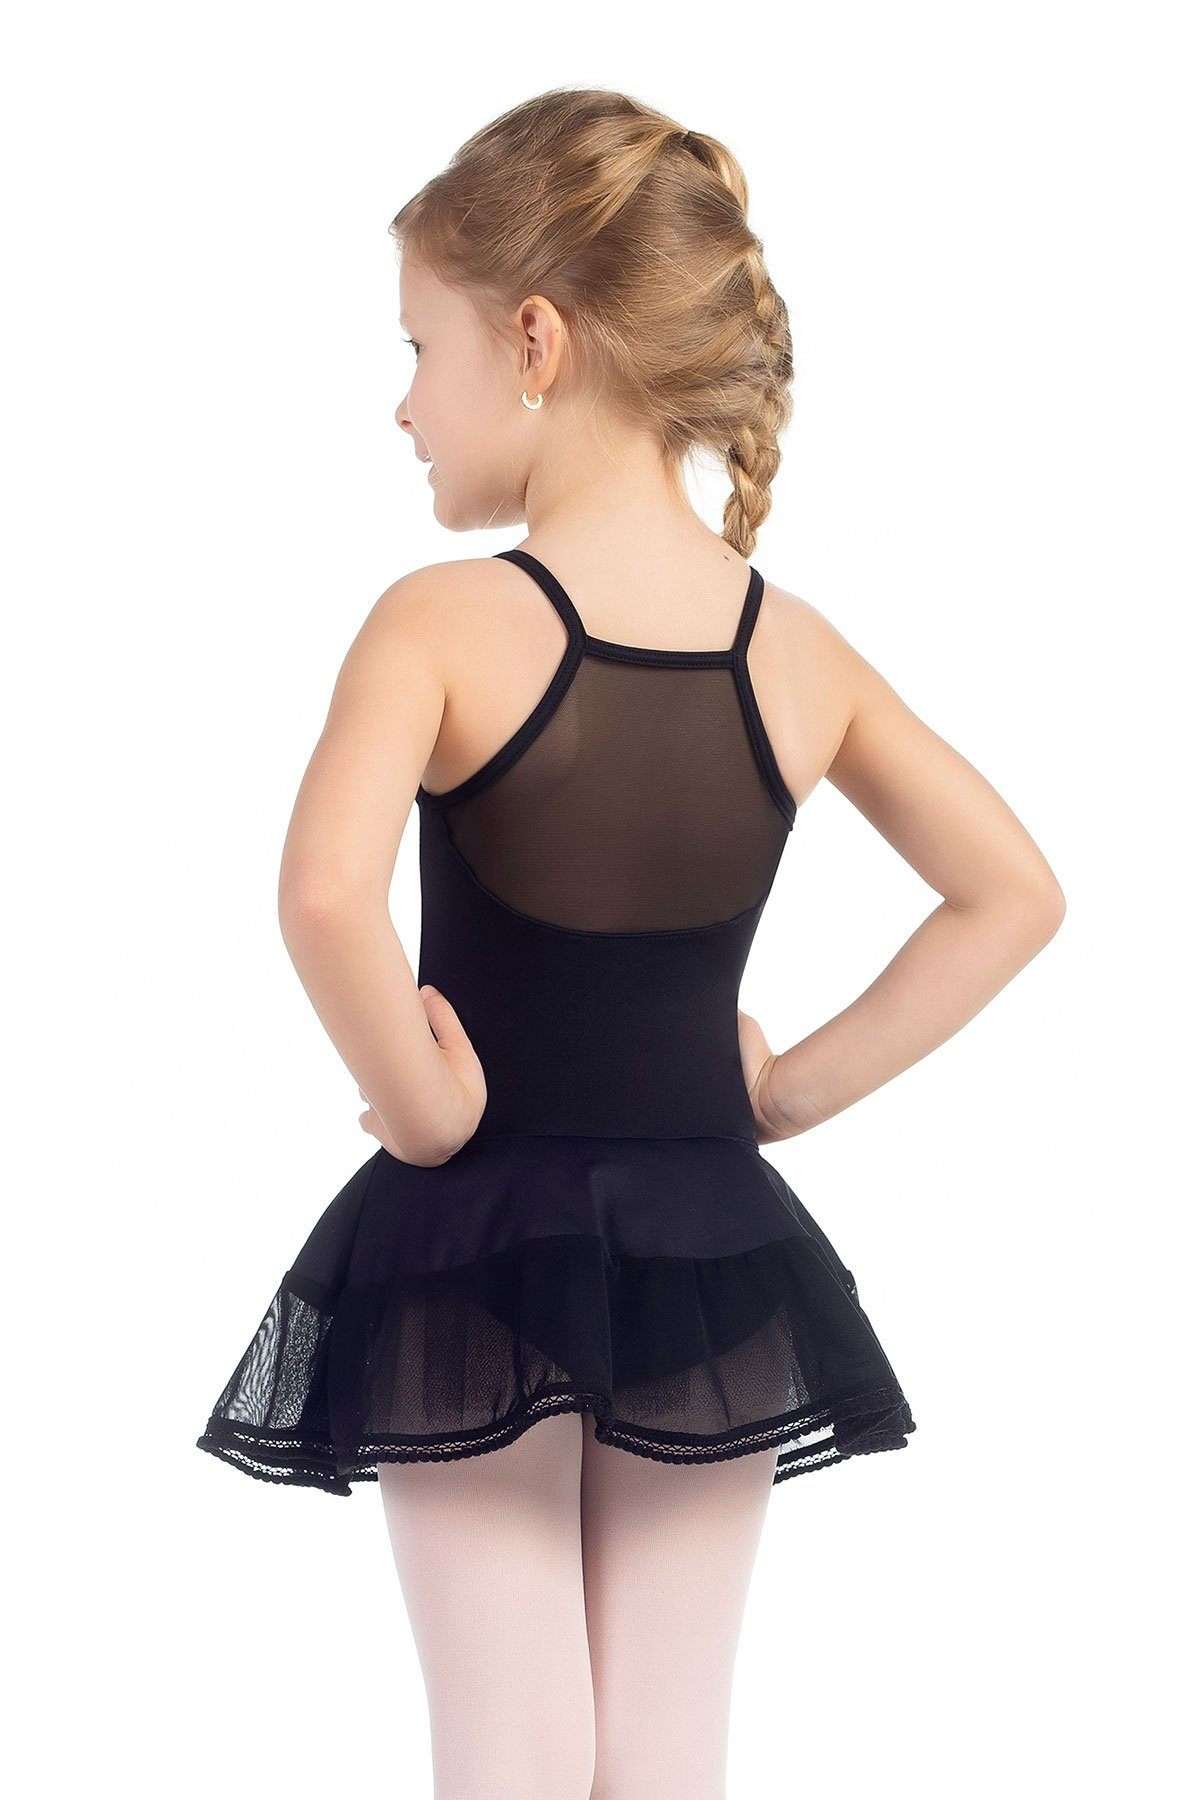 Só Dança Curls Child Dress Leotard w/Attached Skirt